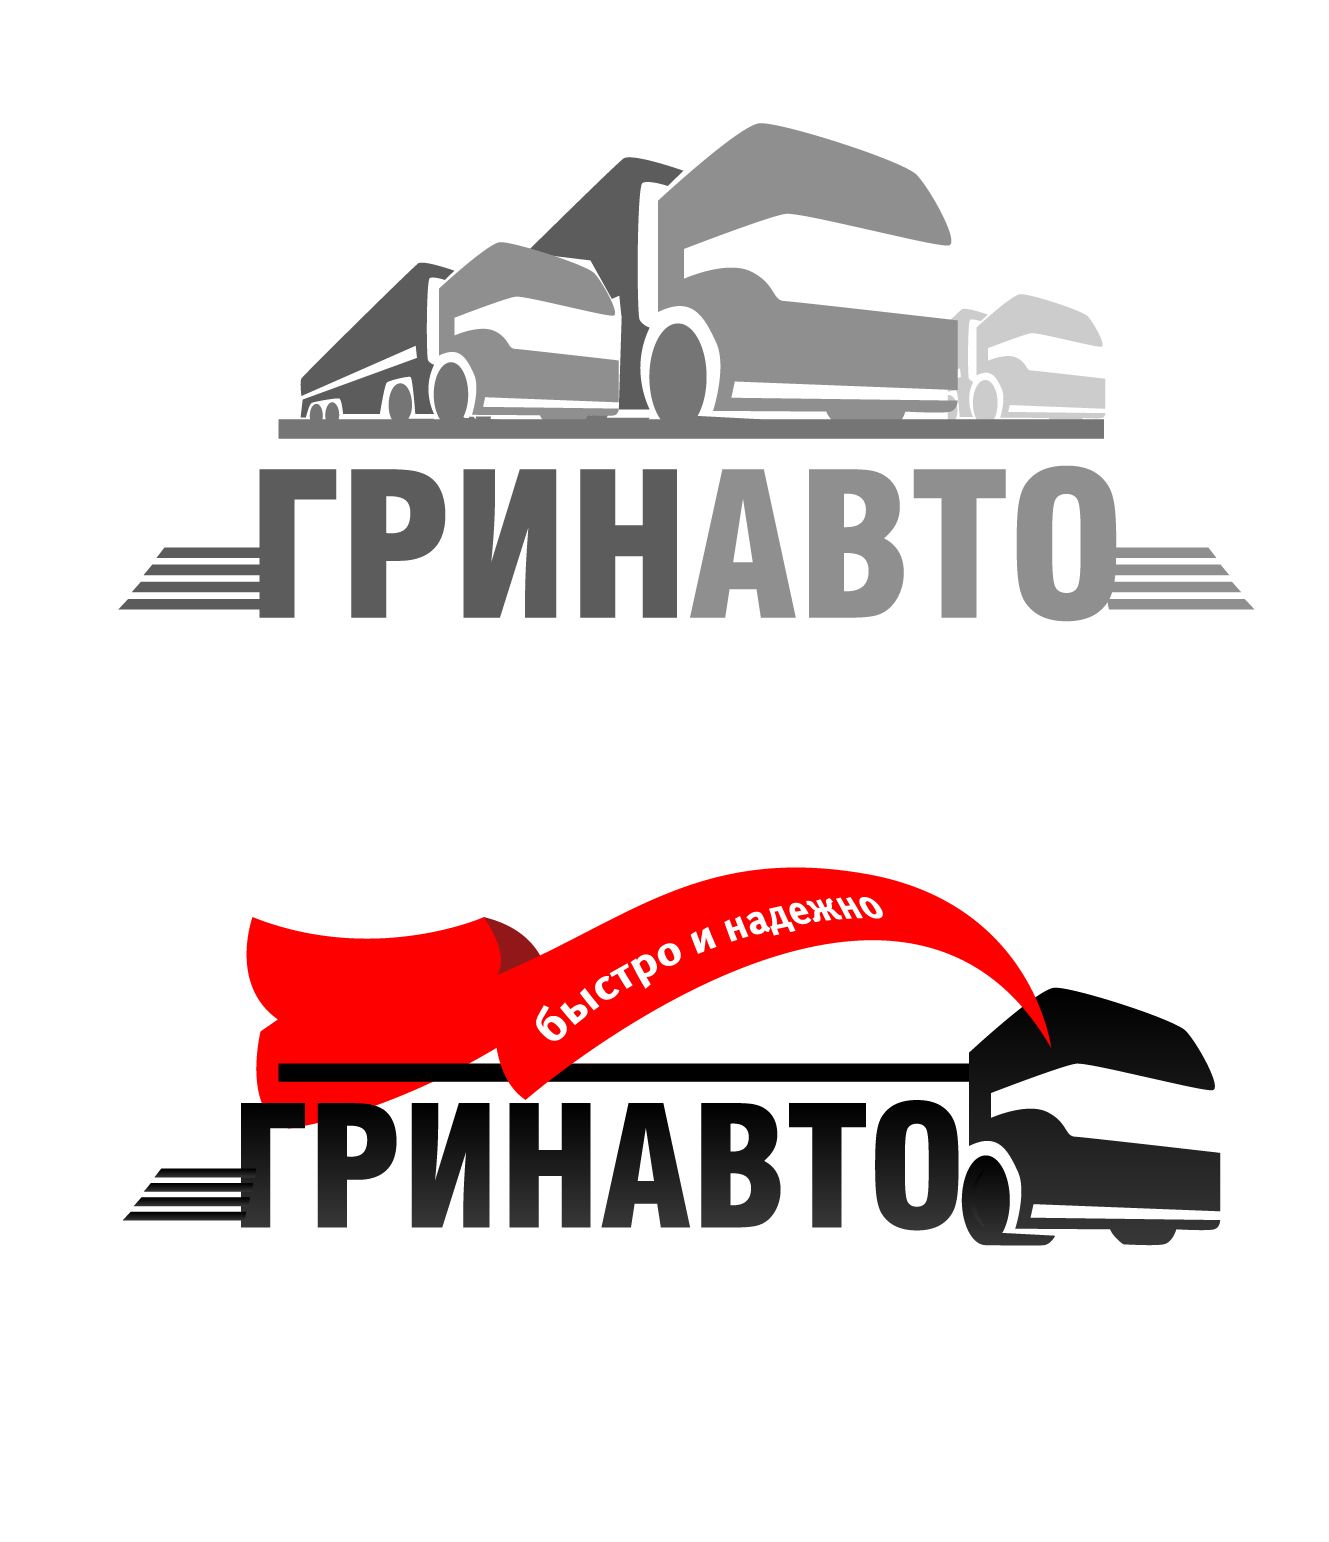 Логотип и фирменный стиль 